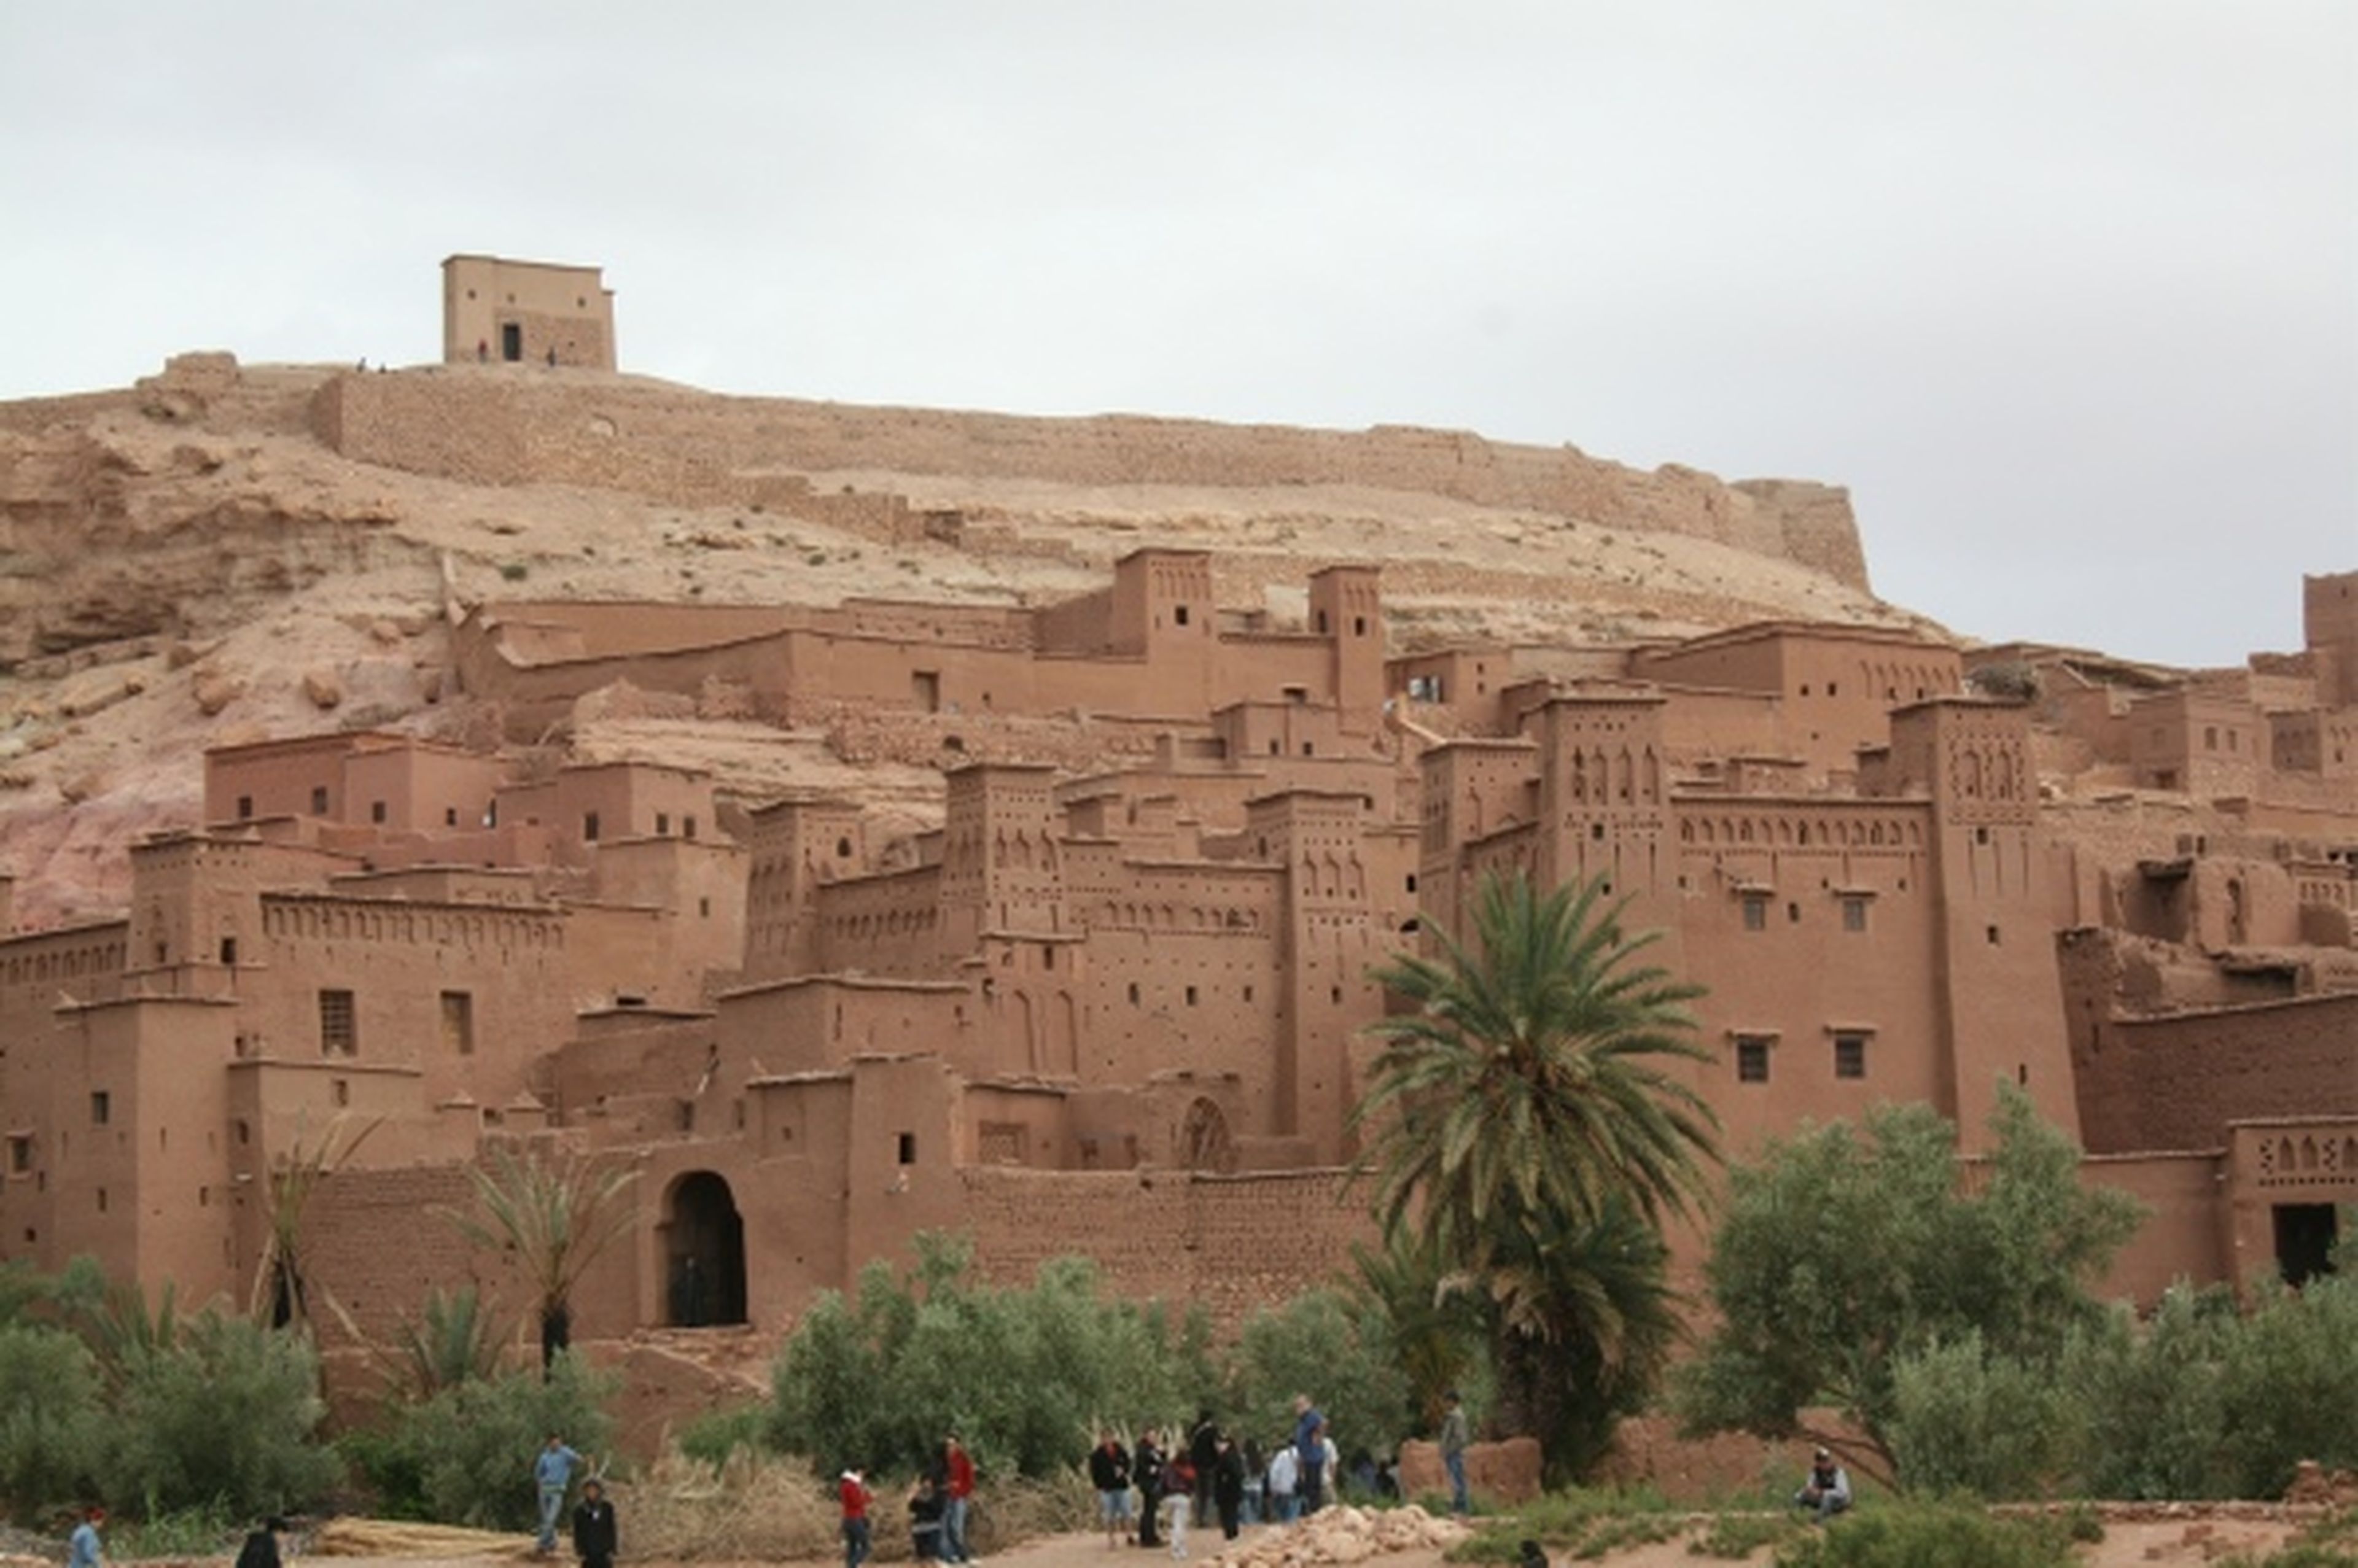 La aventura marroquí de AUTO BILD 4X4 (días 9 y 10): El viaje no termina aquí...